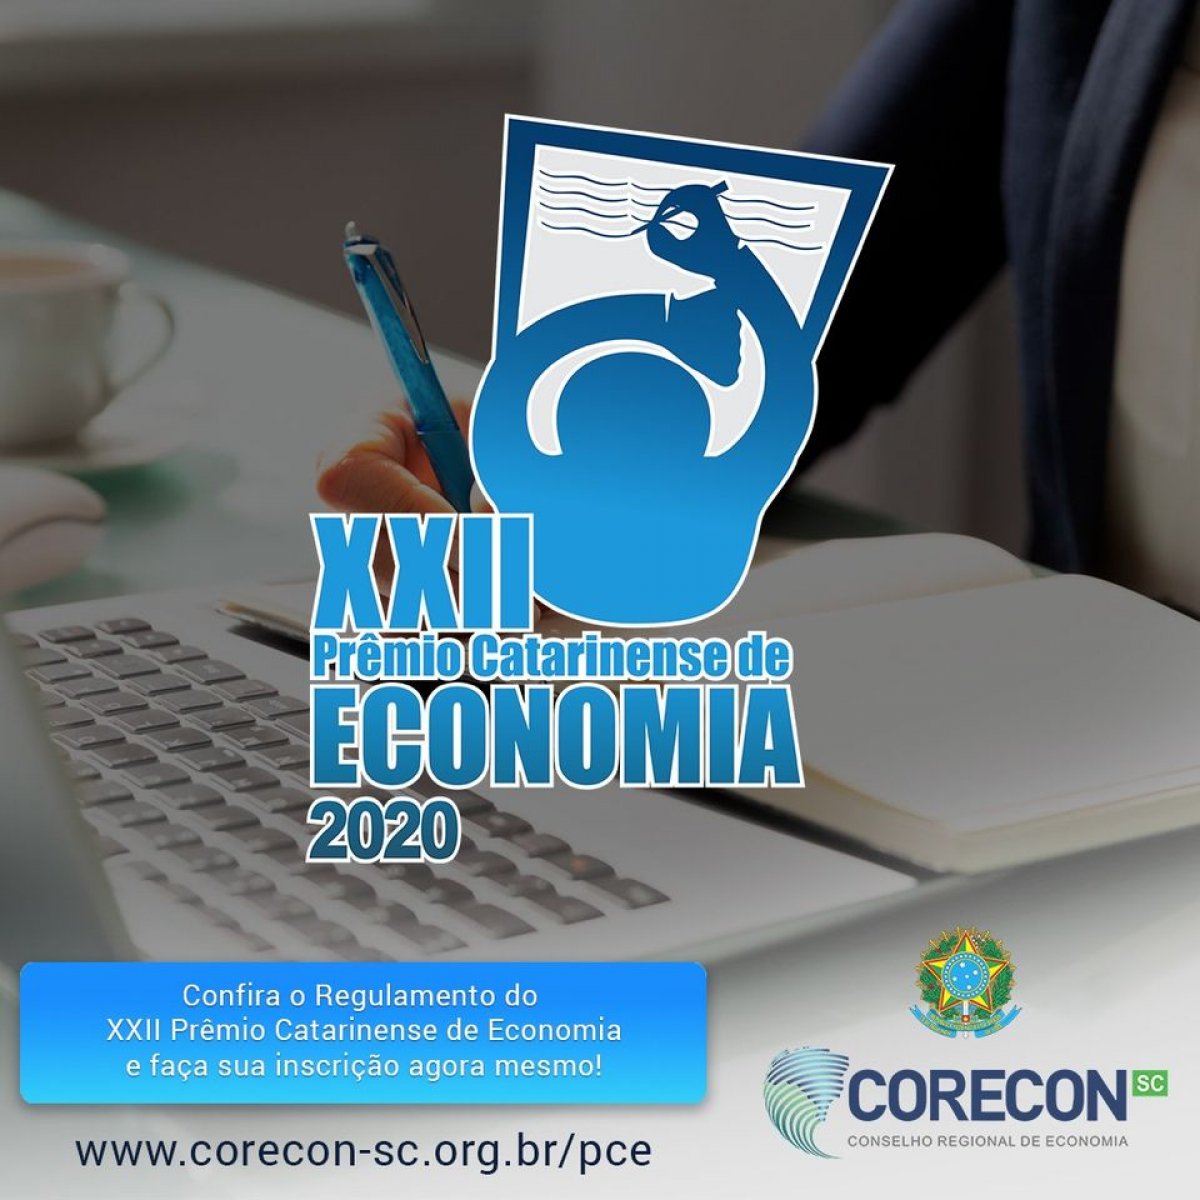 Prêmio Catarinense de Economia está com inscrições abertas até 16 de outubro - Corecon/SC